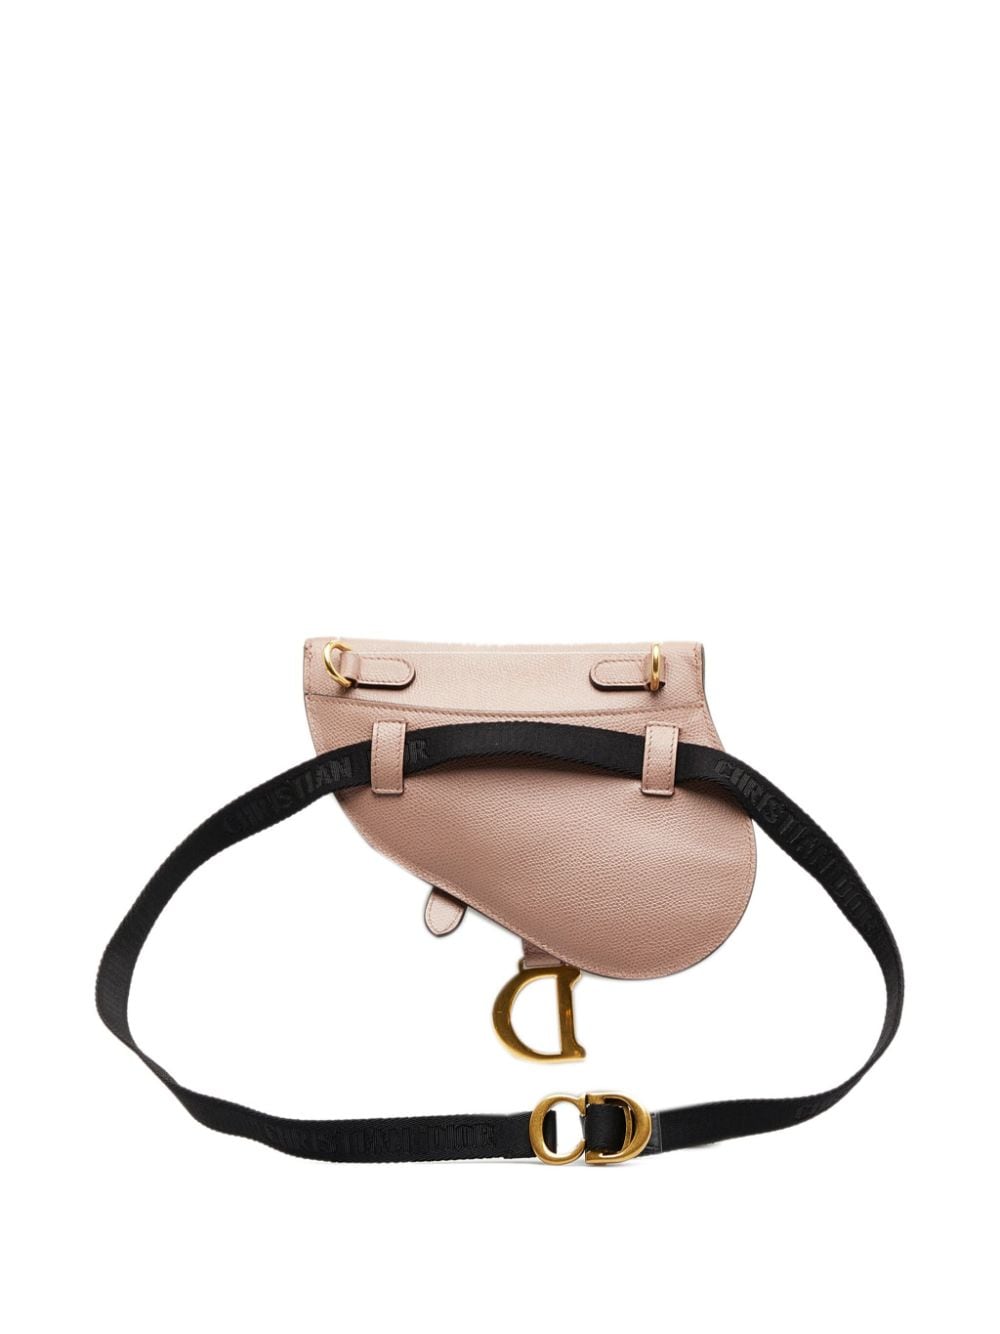 Christian Dior Pre-Owned 2019 pre-owned Saddle belt bag - Beige